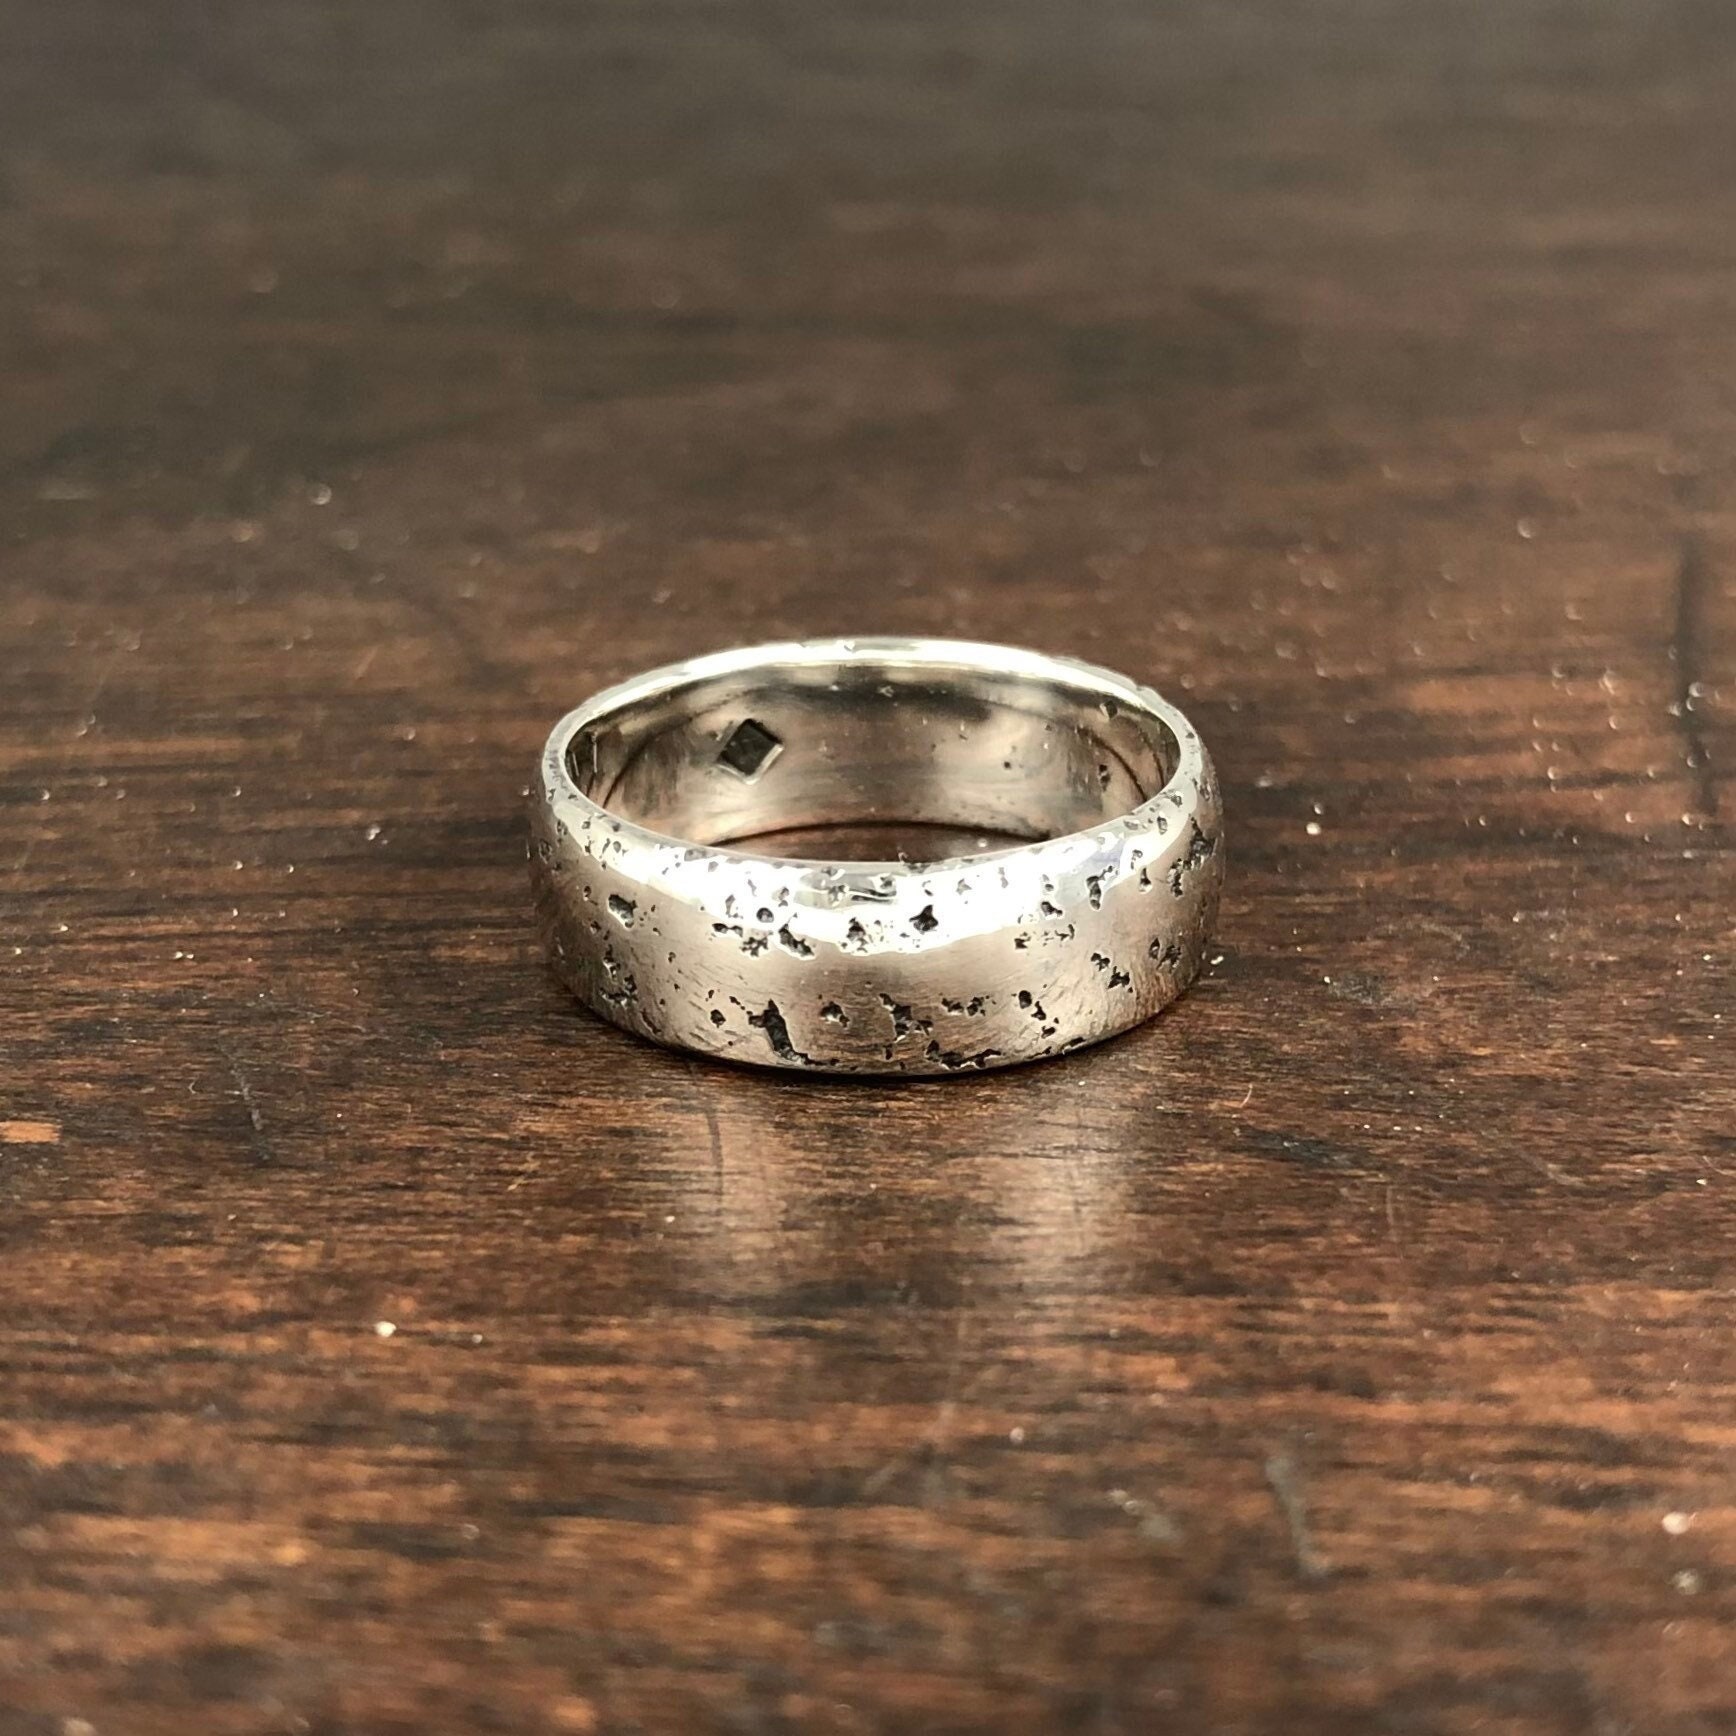 7mm Textured Silver Ring, Matt Sand Cast Ring